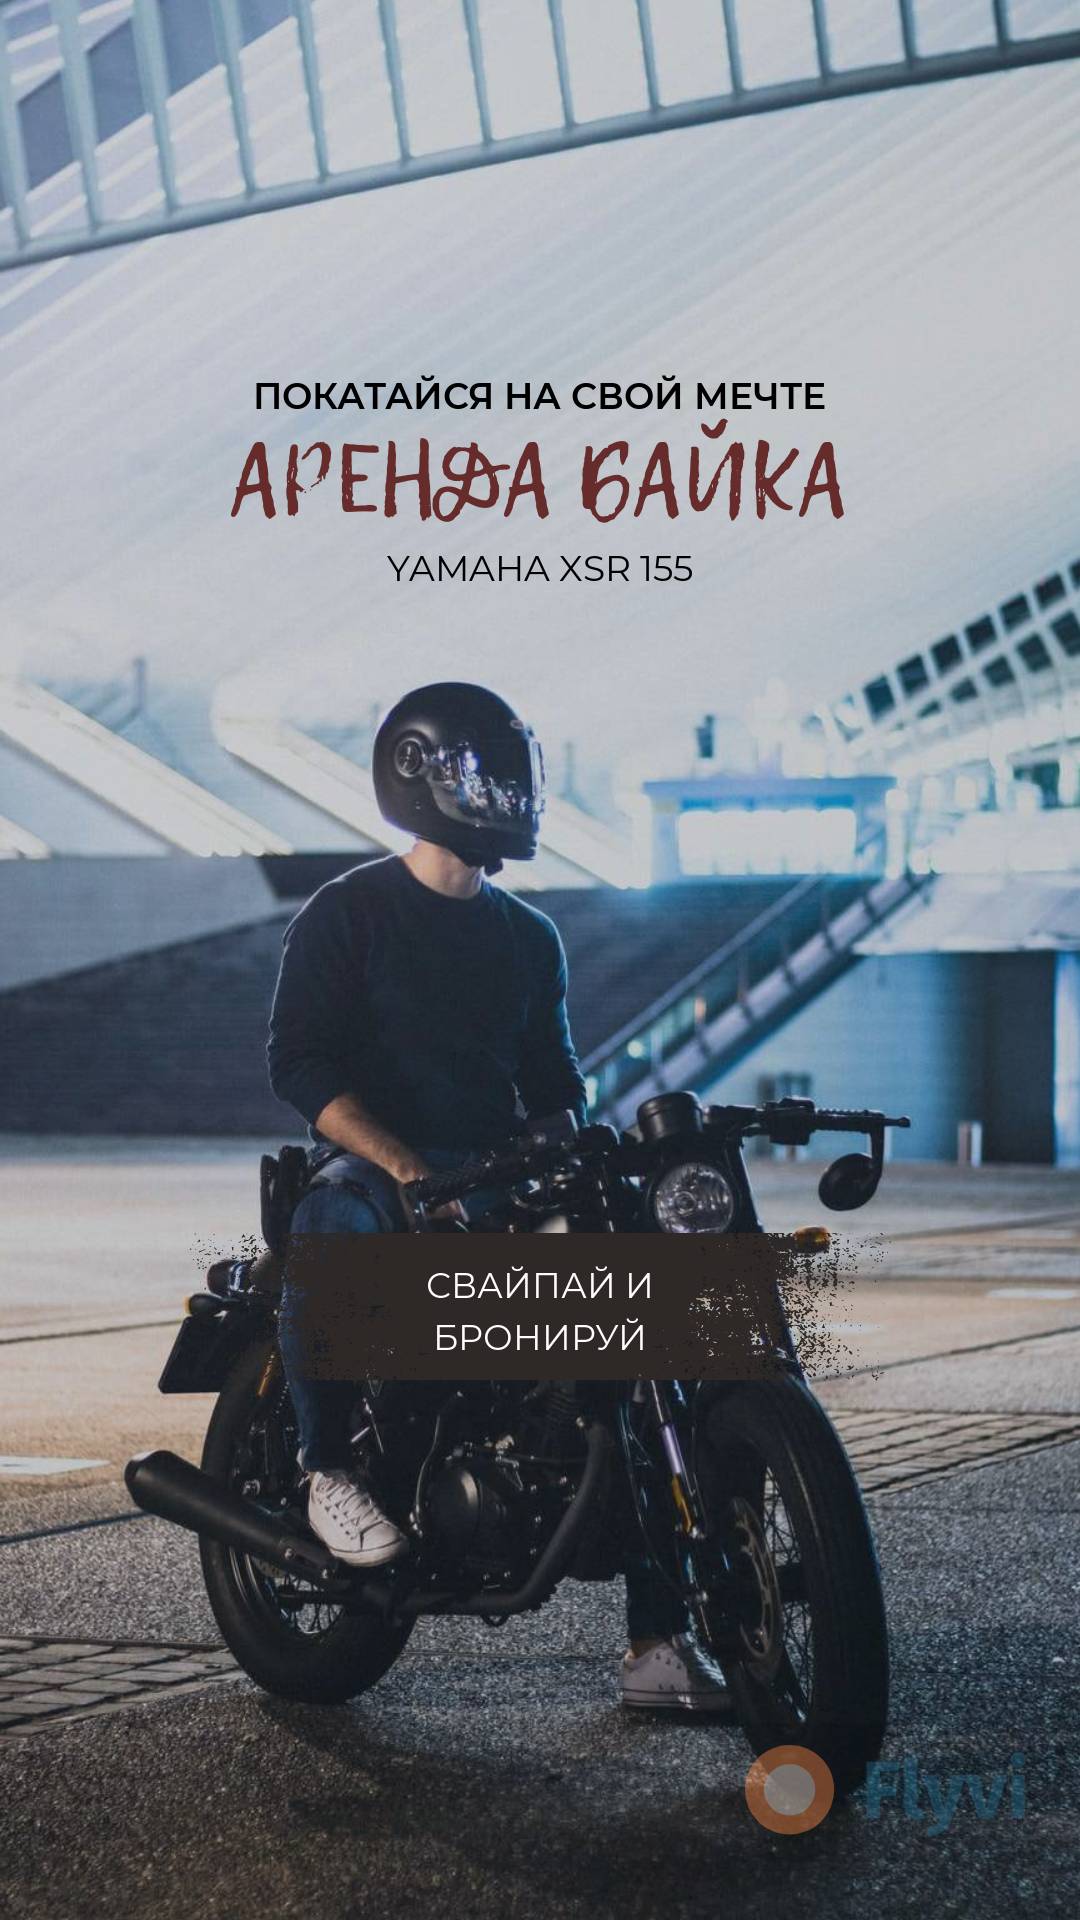 Аренда байка с привлекающим внимание фото молодого человека на мотоцикле в сторис Инстаграм